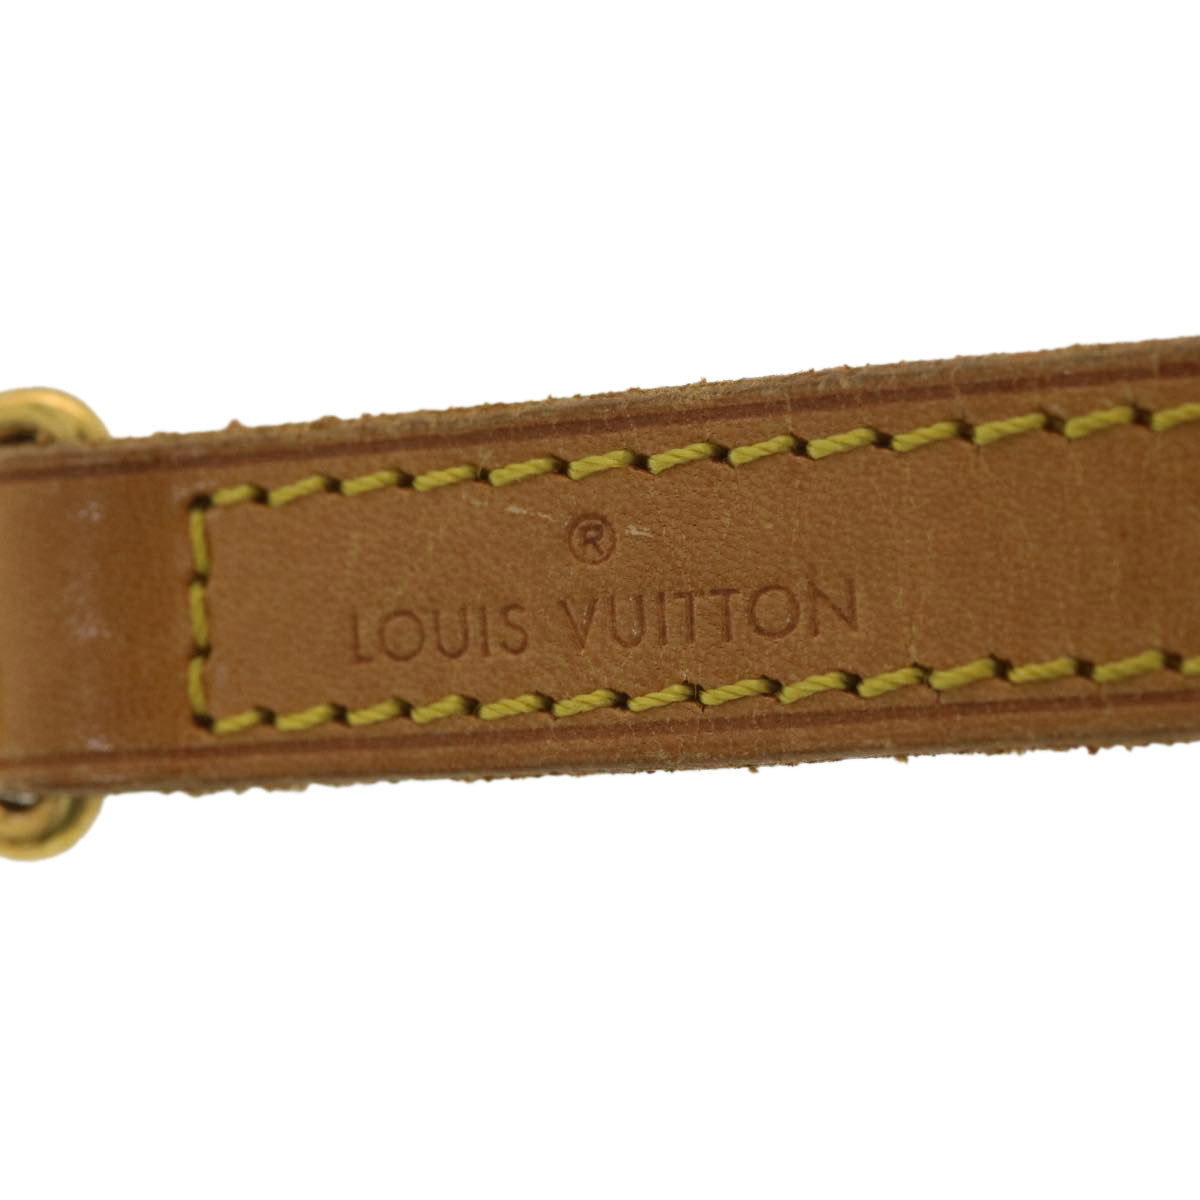 LOUIS VUITTON Shoulder Strap Leather 35.4"" Beige LV Auth 36478